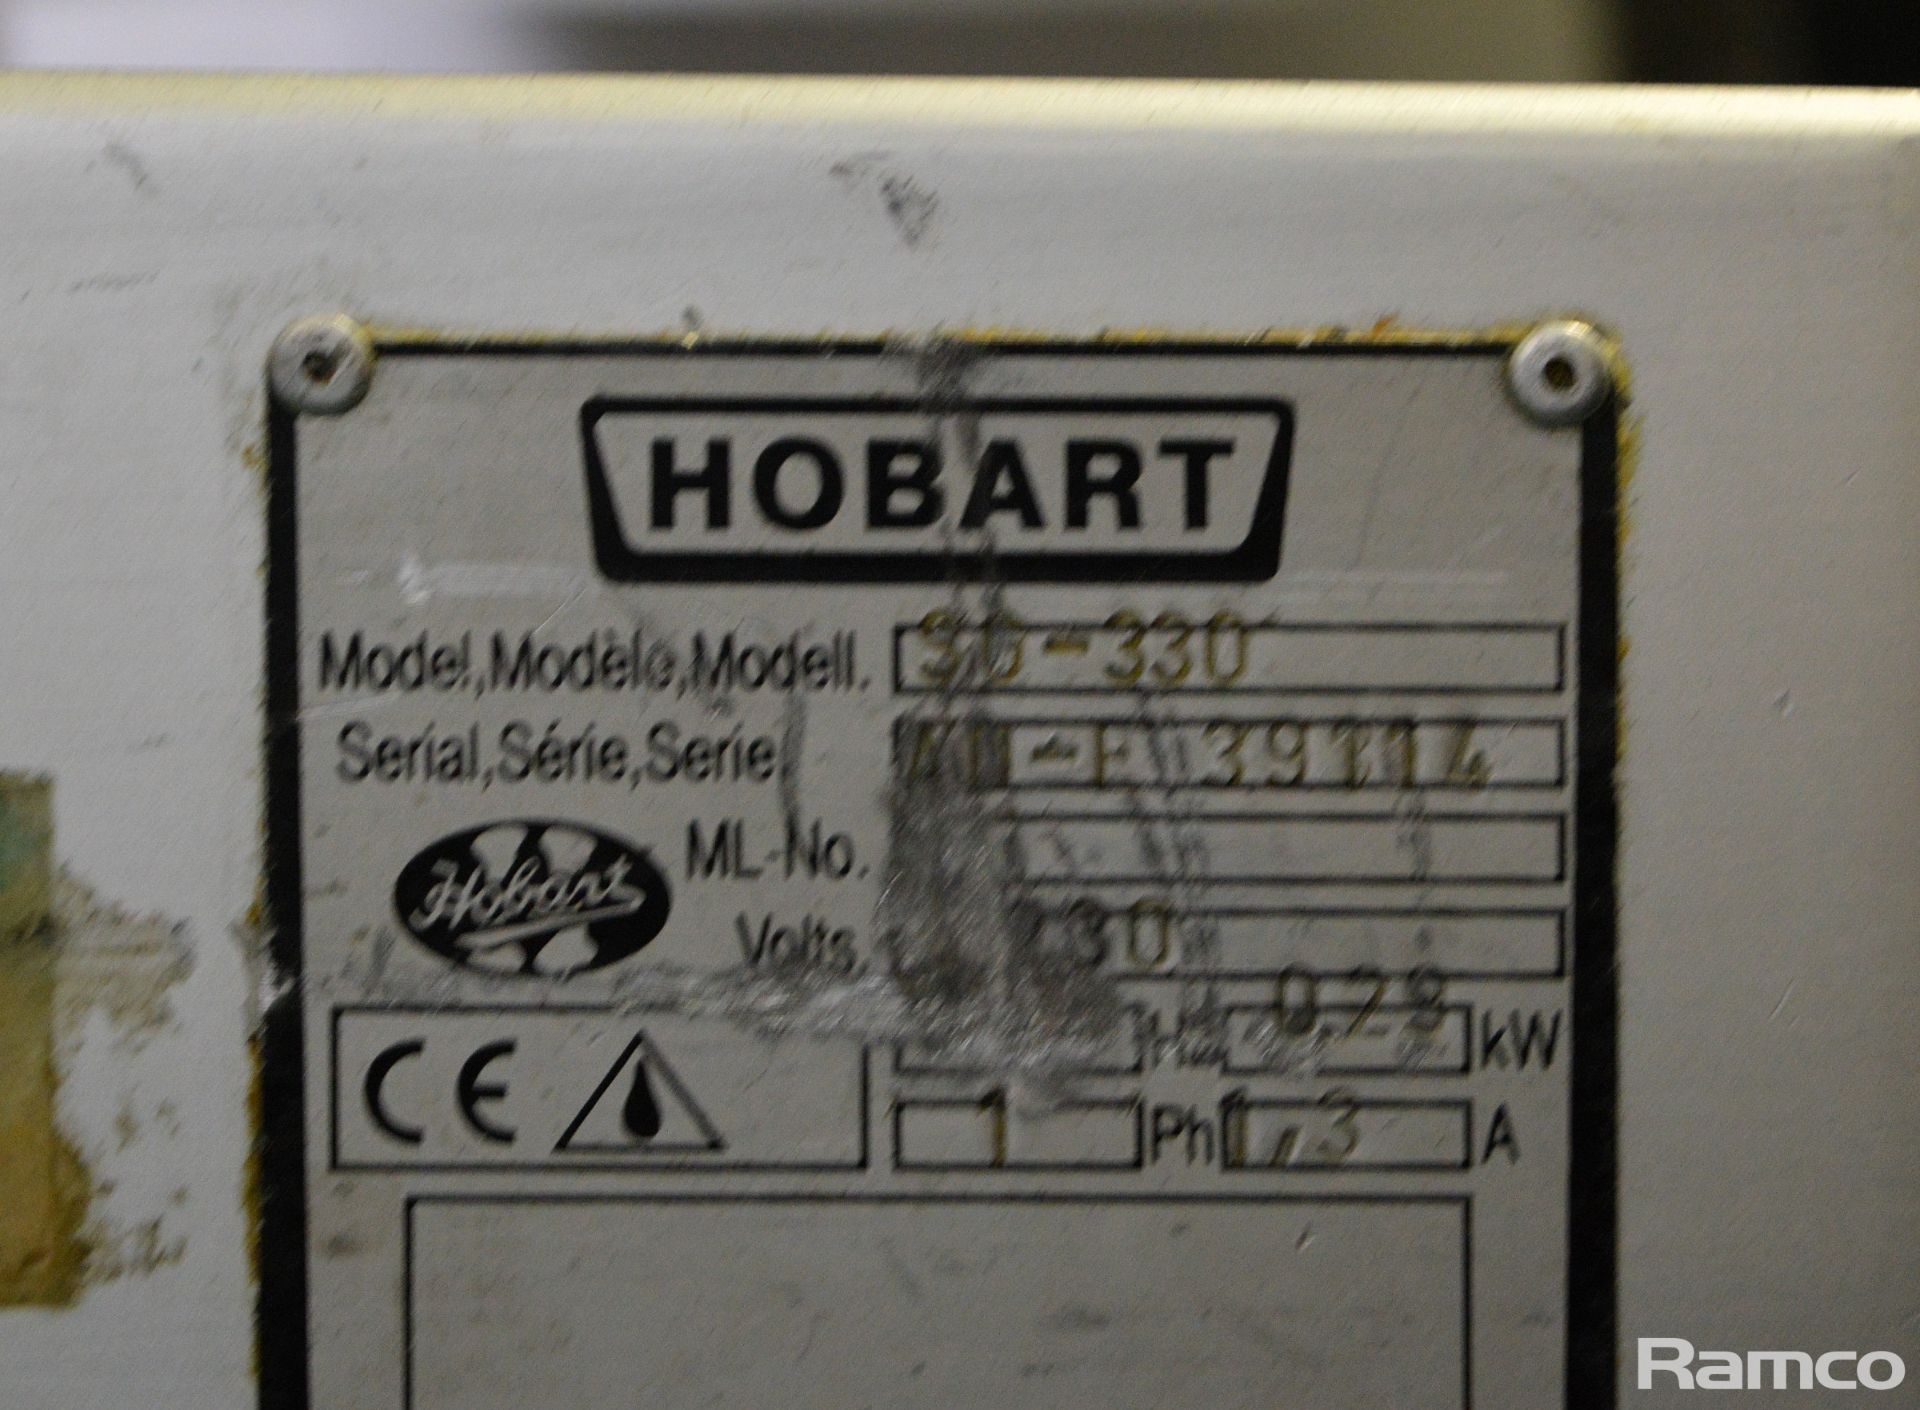 Hobart SG-330 Meat Slicer 230V W 640mm x D 530mm x H 480mm, Musso L1 Ice Cream Maker & more - Image 13 of 13